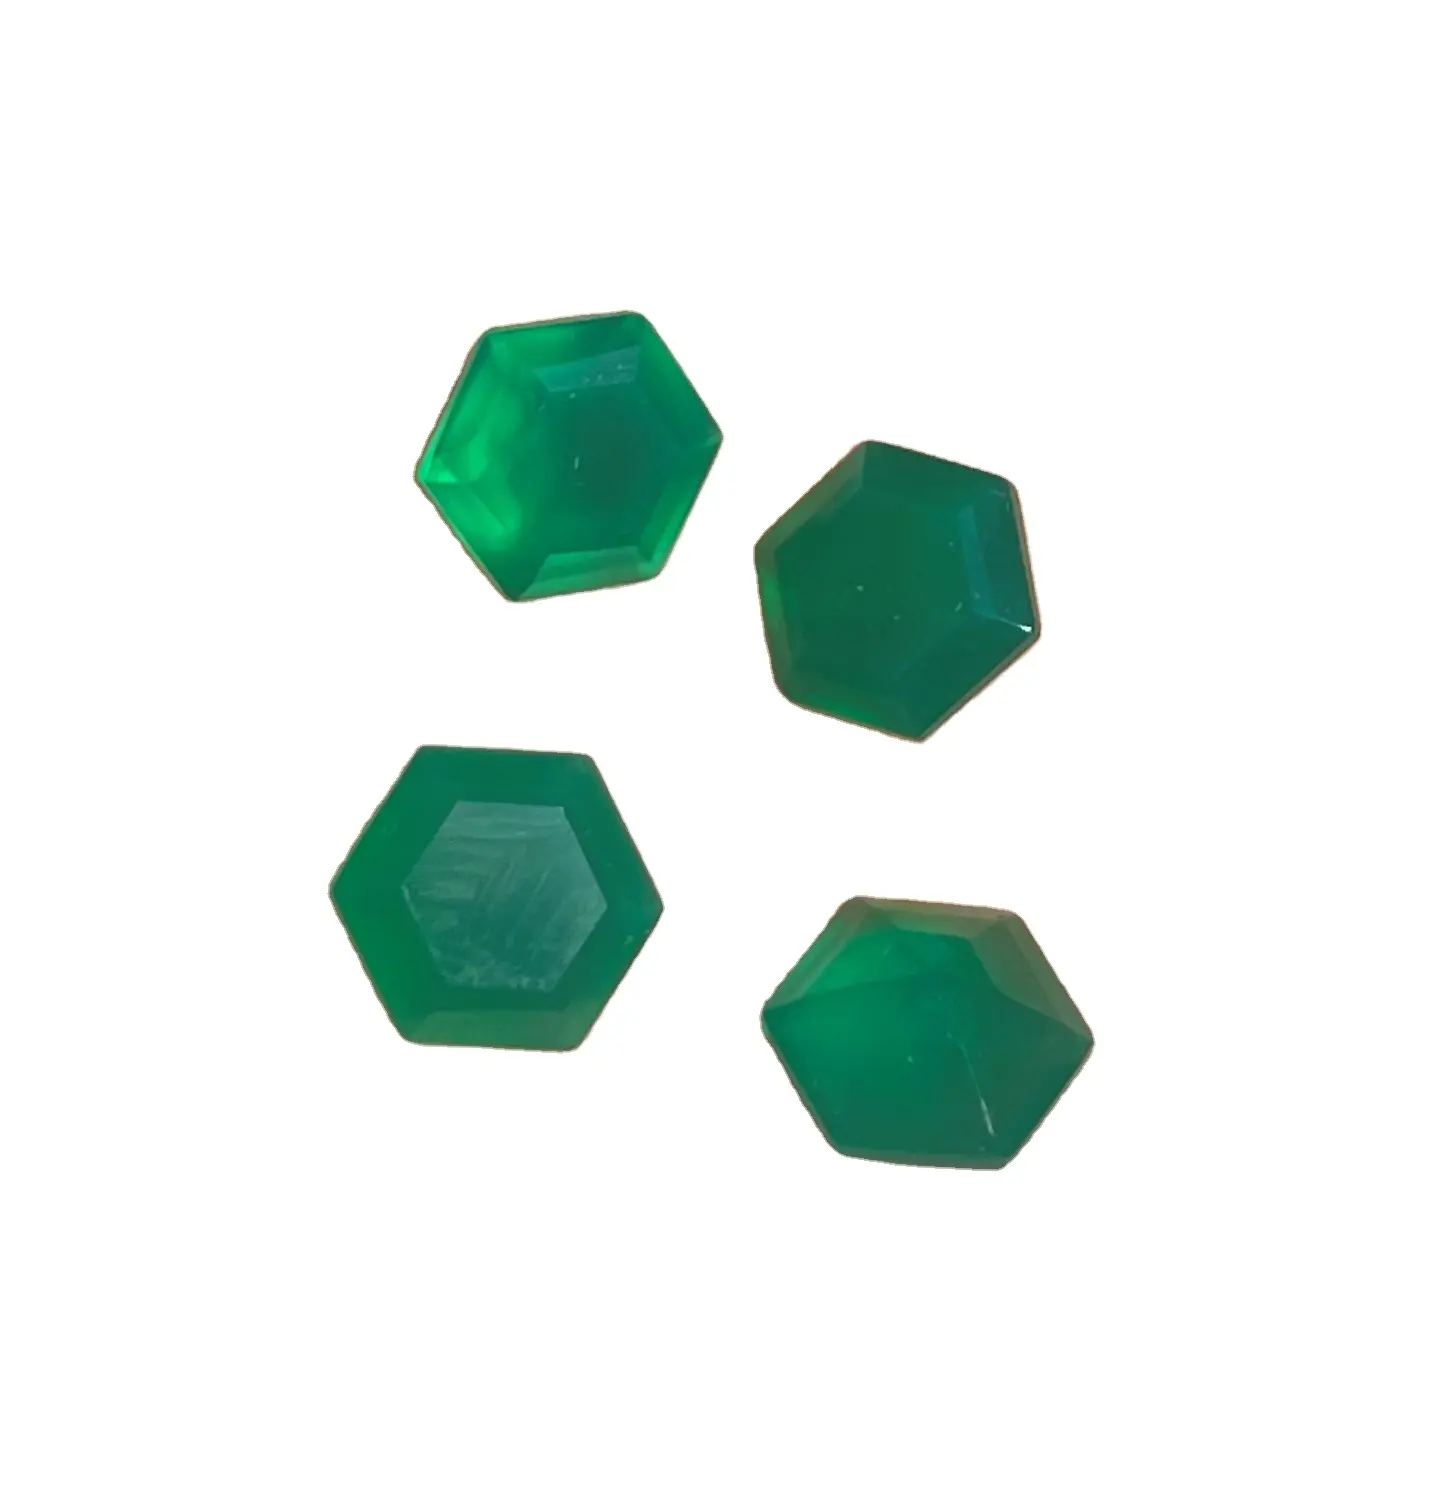 Vente en gros, meilleure qualité et fabrication de forme hexagonale, pierre précieuse d'onyx vert naturel pour la fabrication de bijoux en argent provenant de l'inde